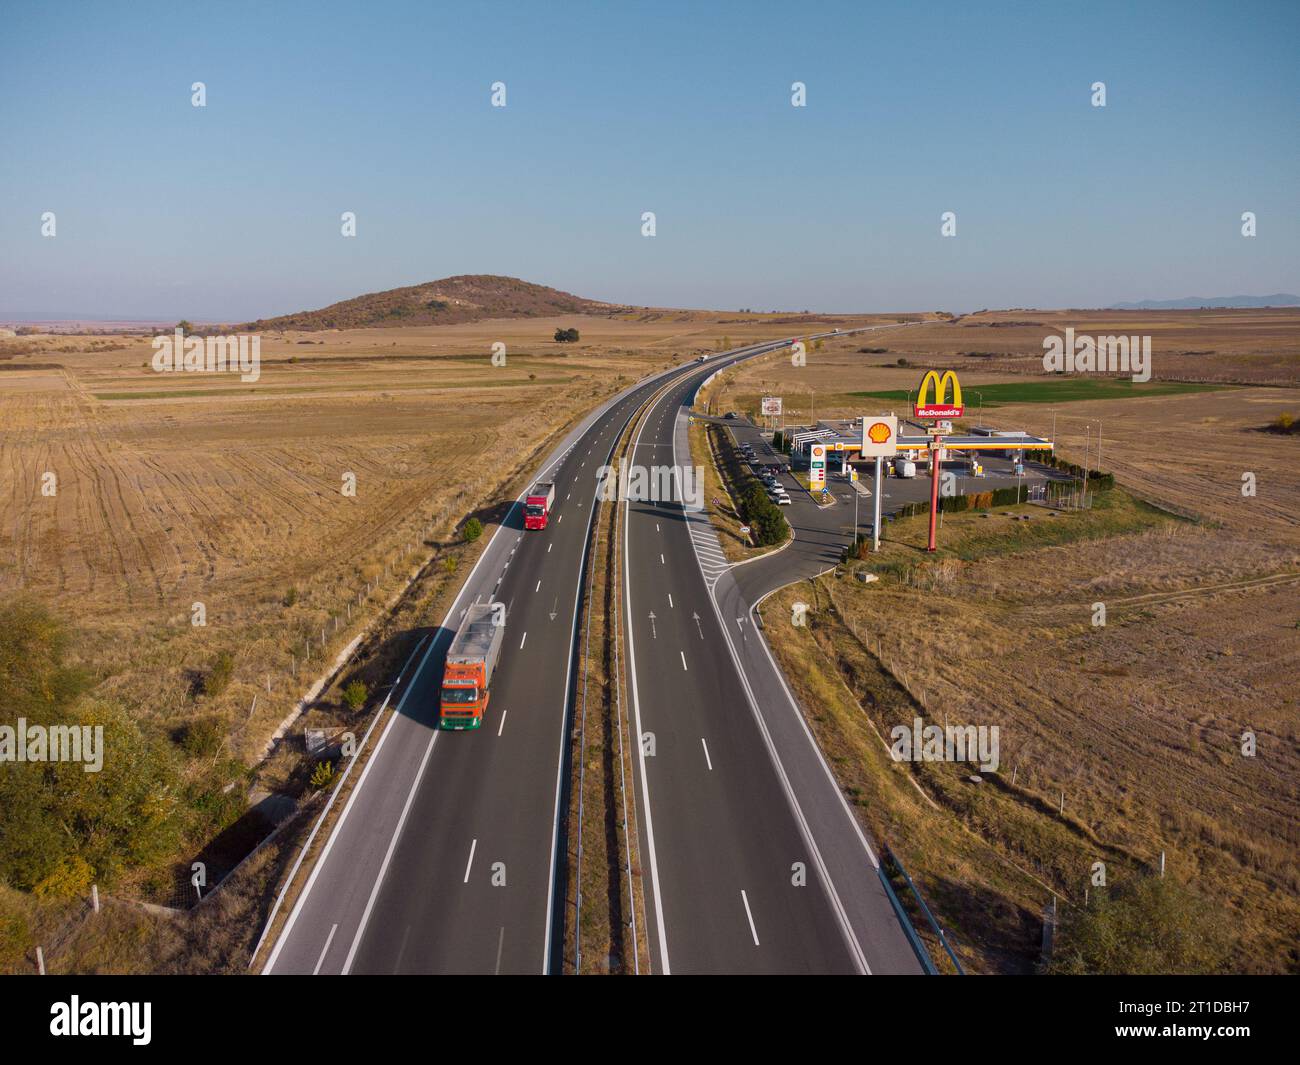 Drazhevo - novembre 1, McDonald's McDrive signe à la station de gaz Shell sur une autoroute dans la soirée vue aérienne le 1 novembre Drazhevo Bulgarie Banque D'Images